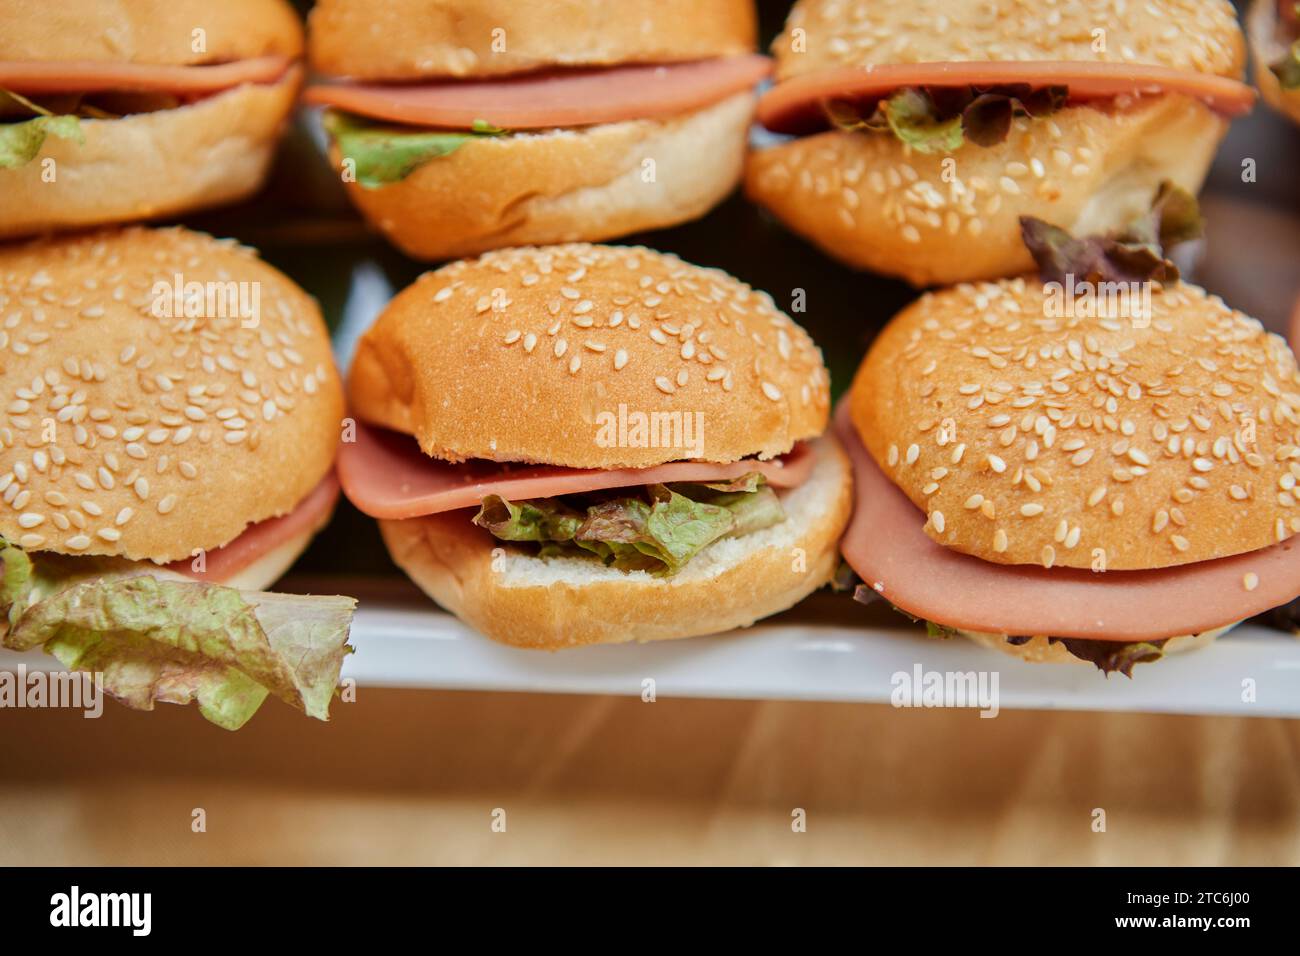 Gros plan sur un cheeseburger maison servi sur une assiette Banque D'Images